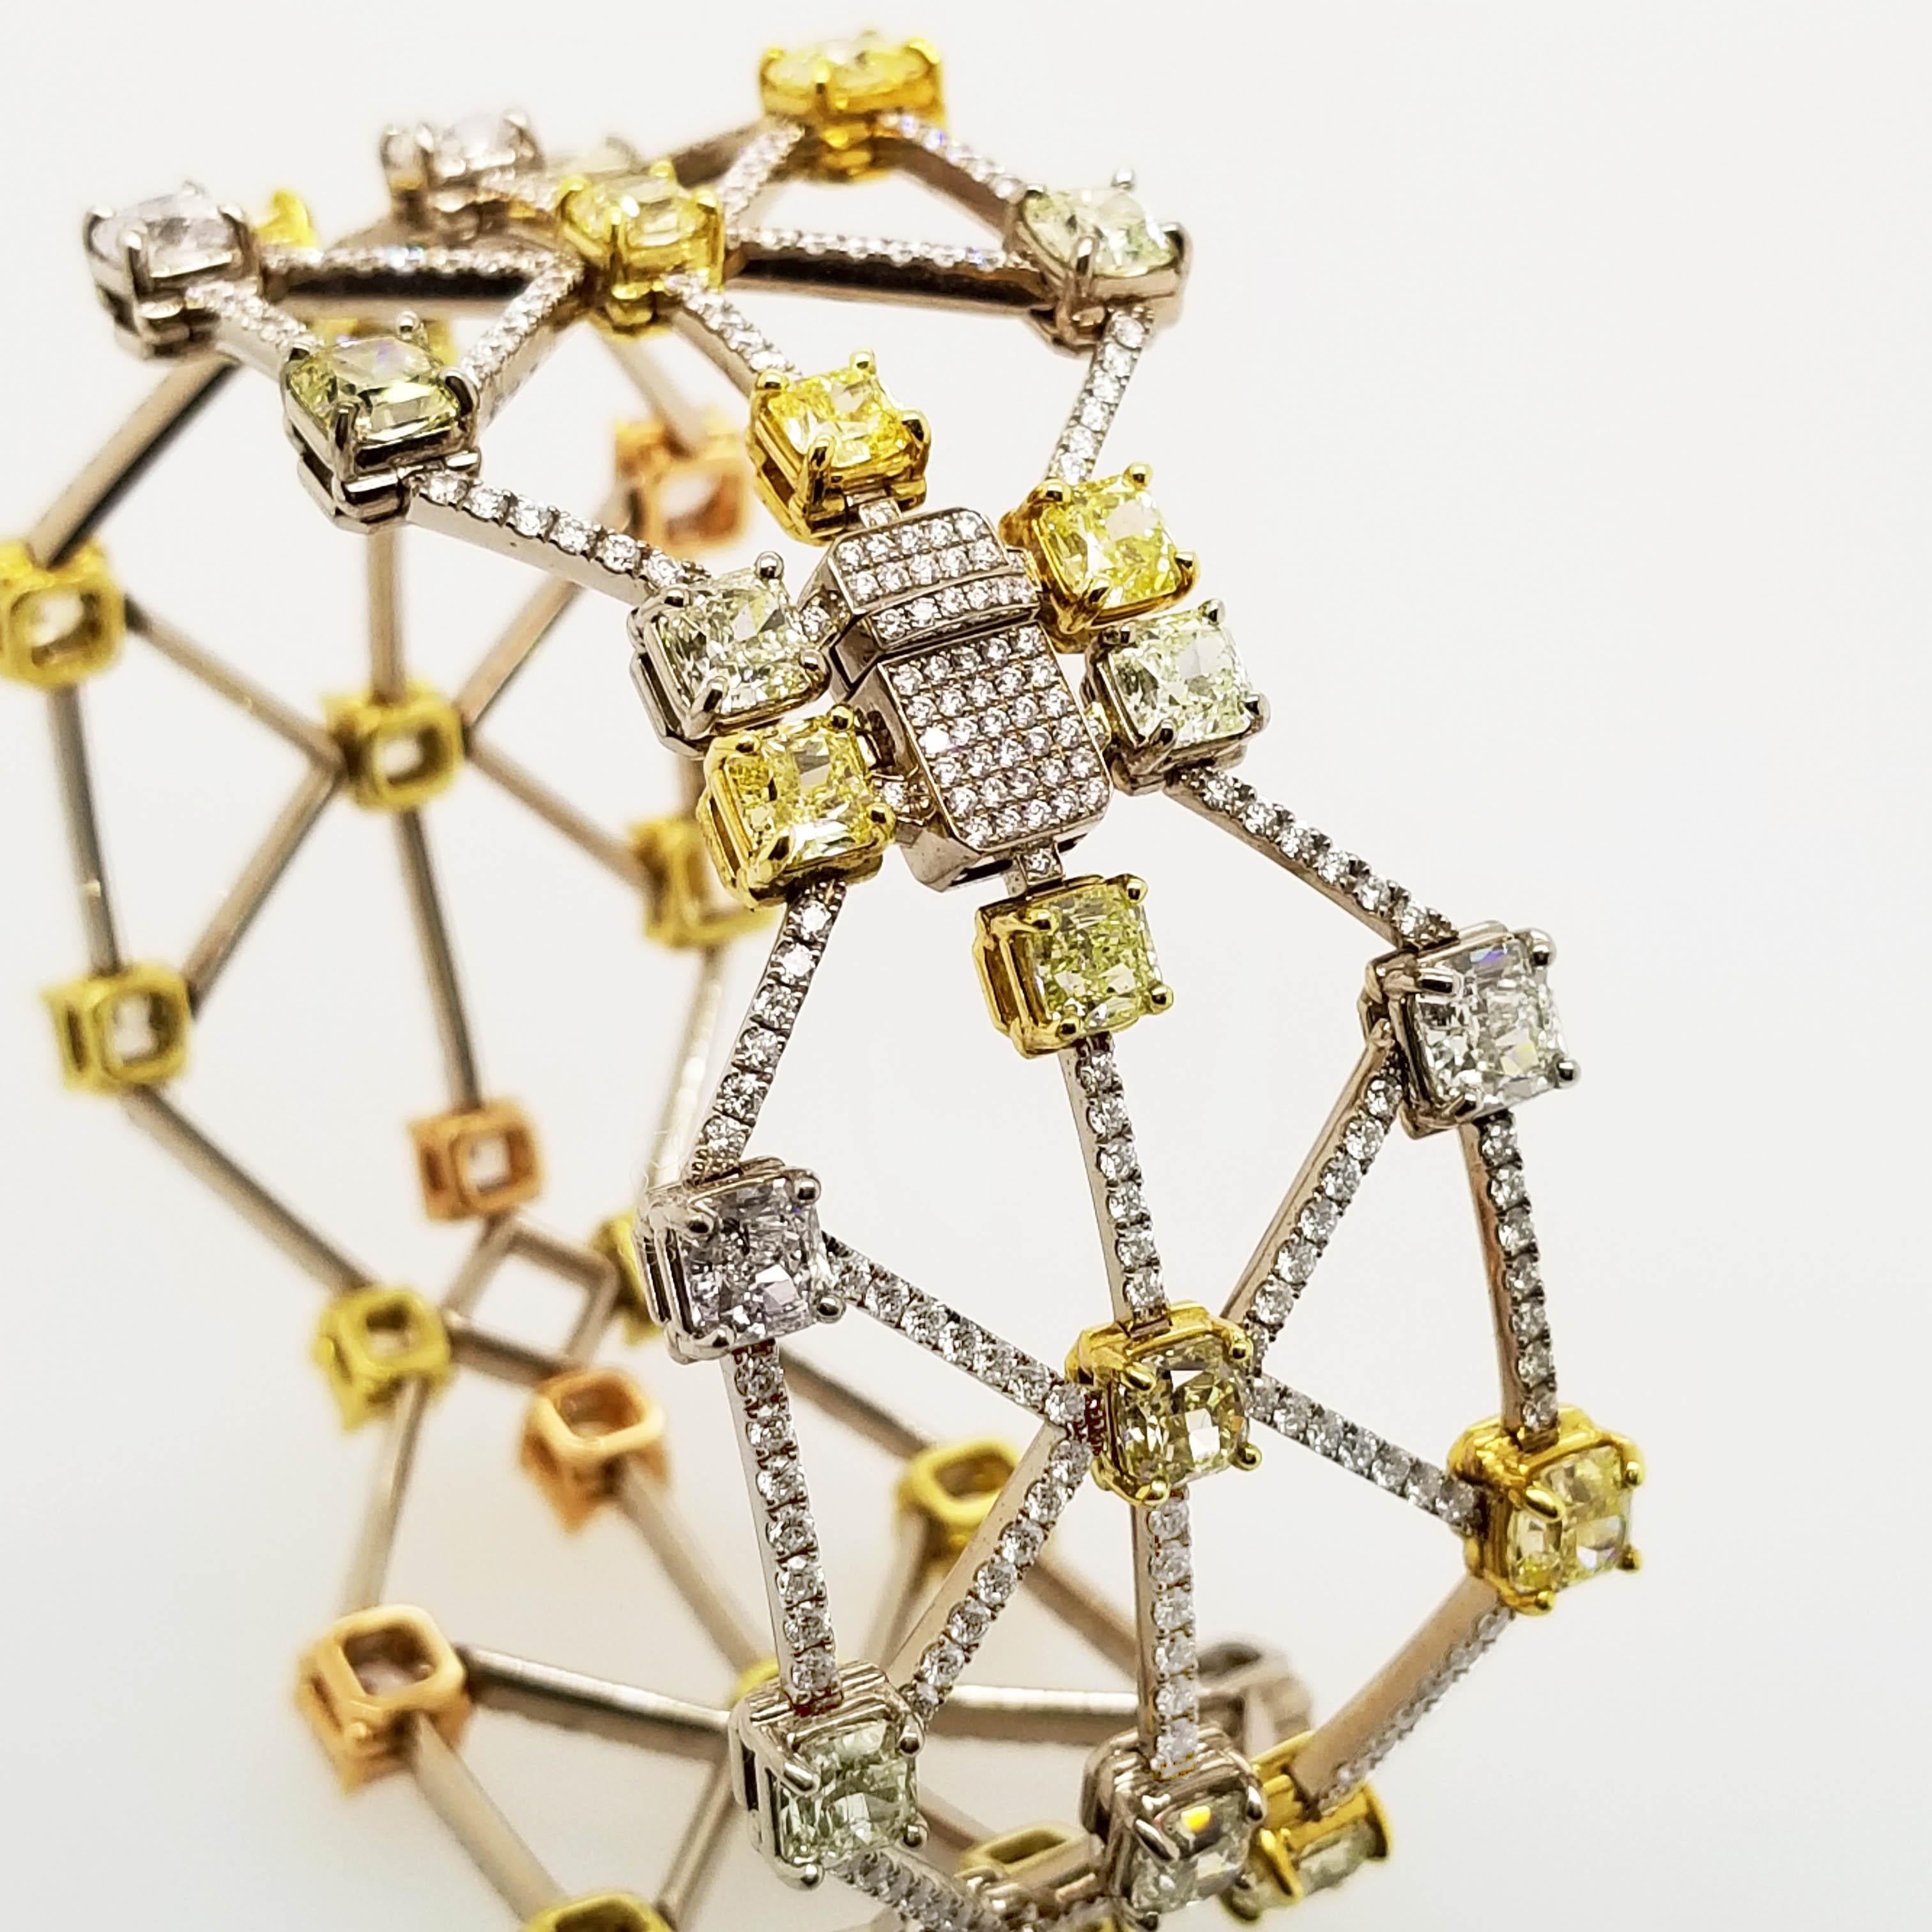 Von Scarselli - erkannt  führend in der Welt der natürlichen Fancy-Diamanten - dieses einzigartige Diamantarmband enthält eine reizvolle Auswahl an natürlich geförderten Fancy-Diamanten, die mit einem Gitterwerk aus weißen Diamanten verbunden sind. 